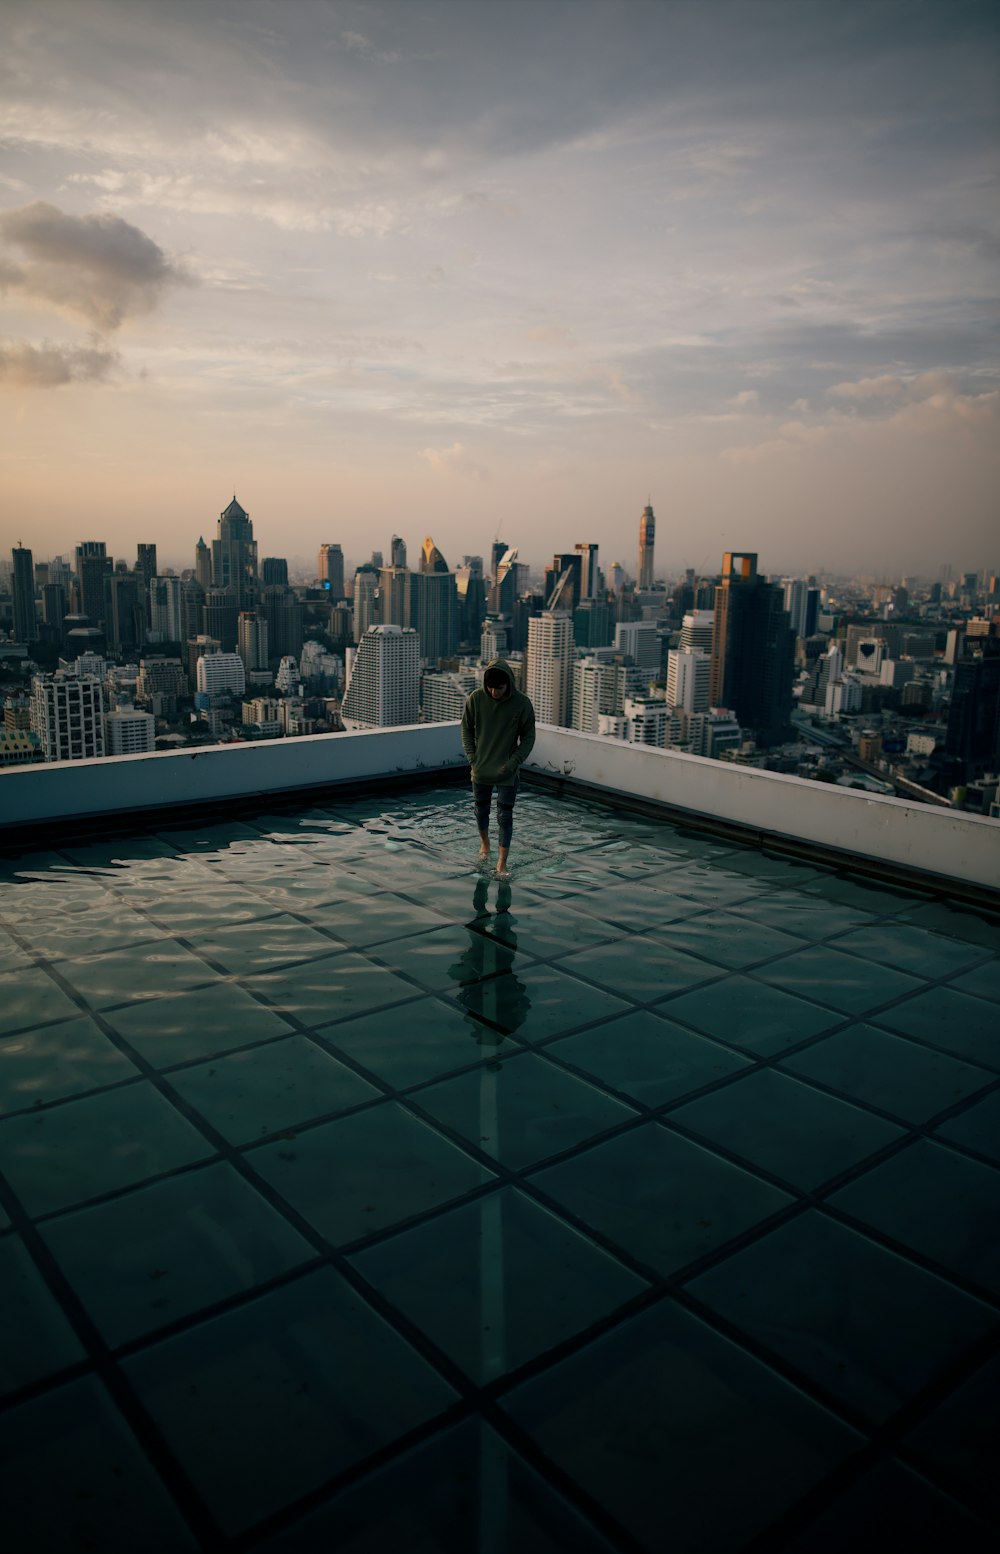 회색 하늘 아래 고층 건물을 마주보고 있는 건물 꼭대기에 서 있는 남자